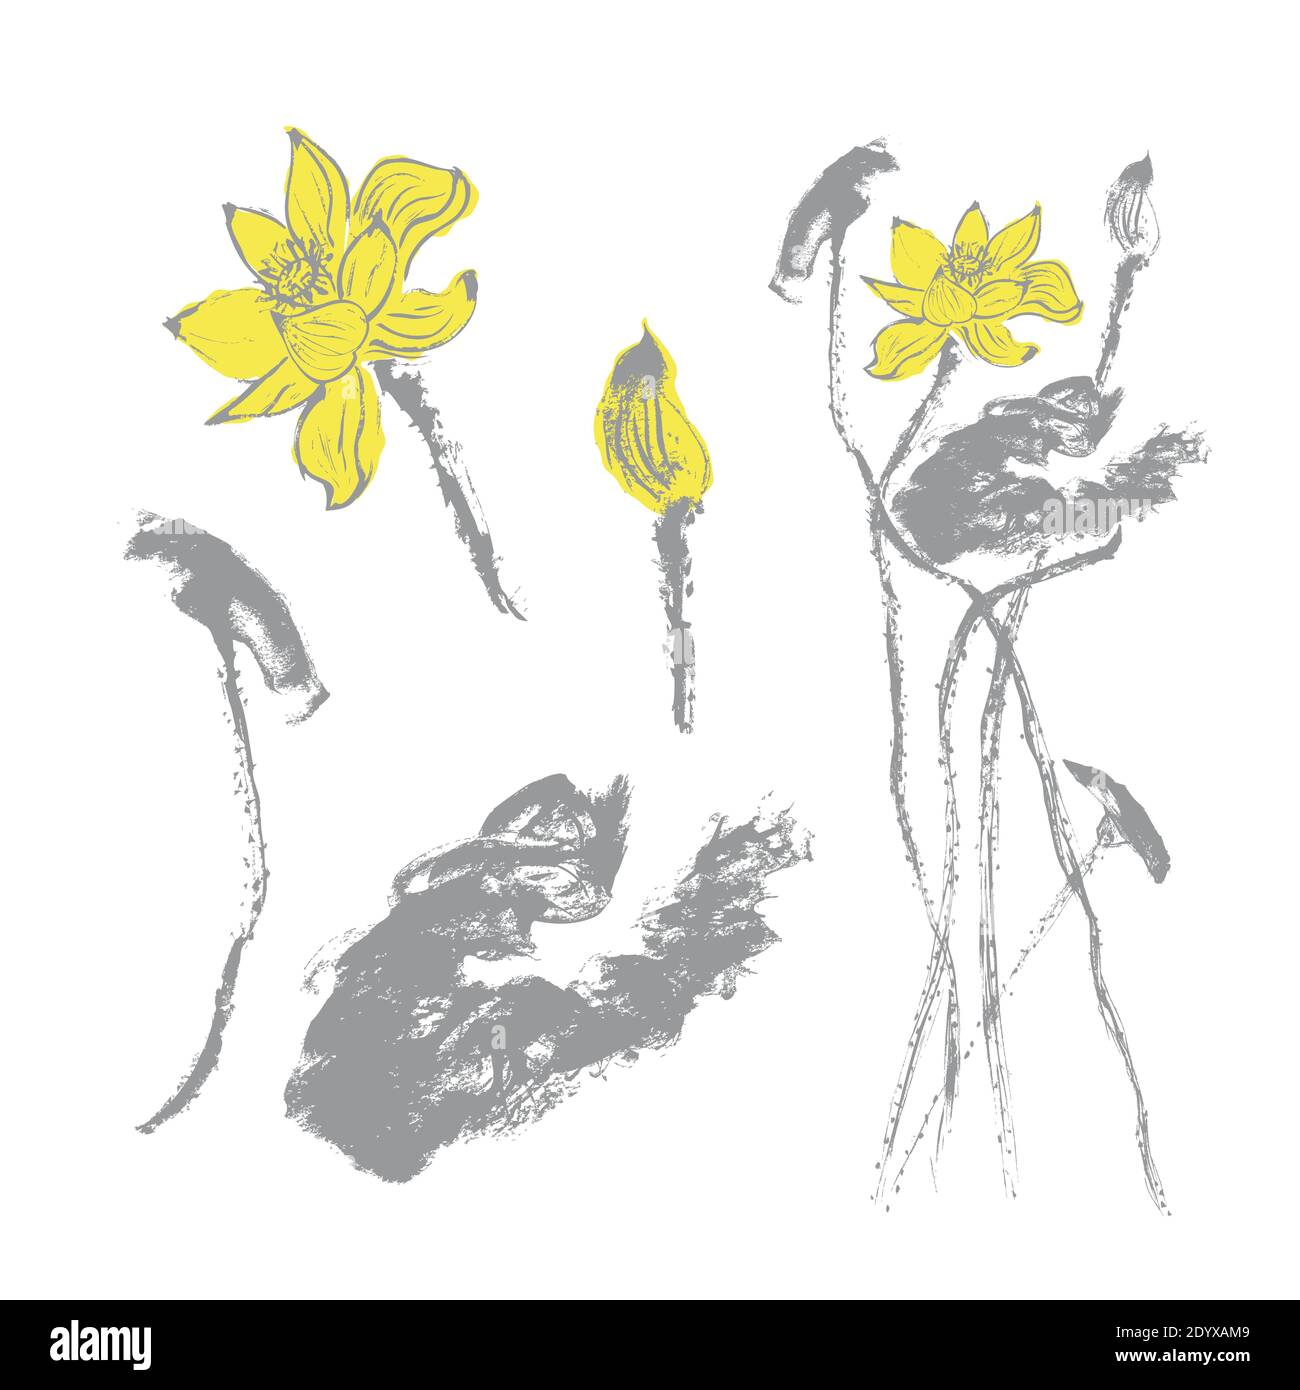 Ensemble de fleurs et de feuilles de lotus dessinées à la main, en gris et jaune. Arrière-plan blanc. Aquarelle. Vecteur de brut Illustration de Vecteur